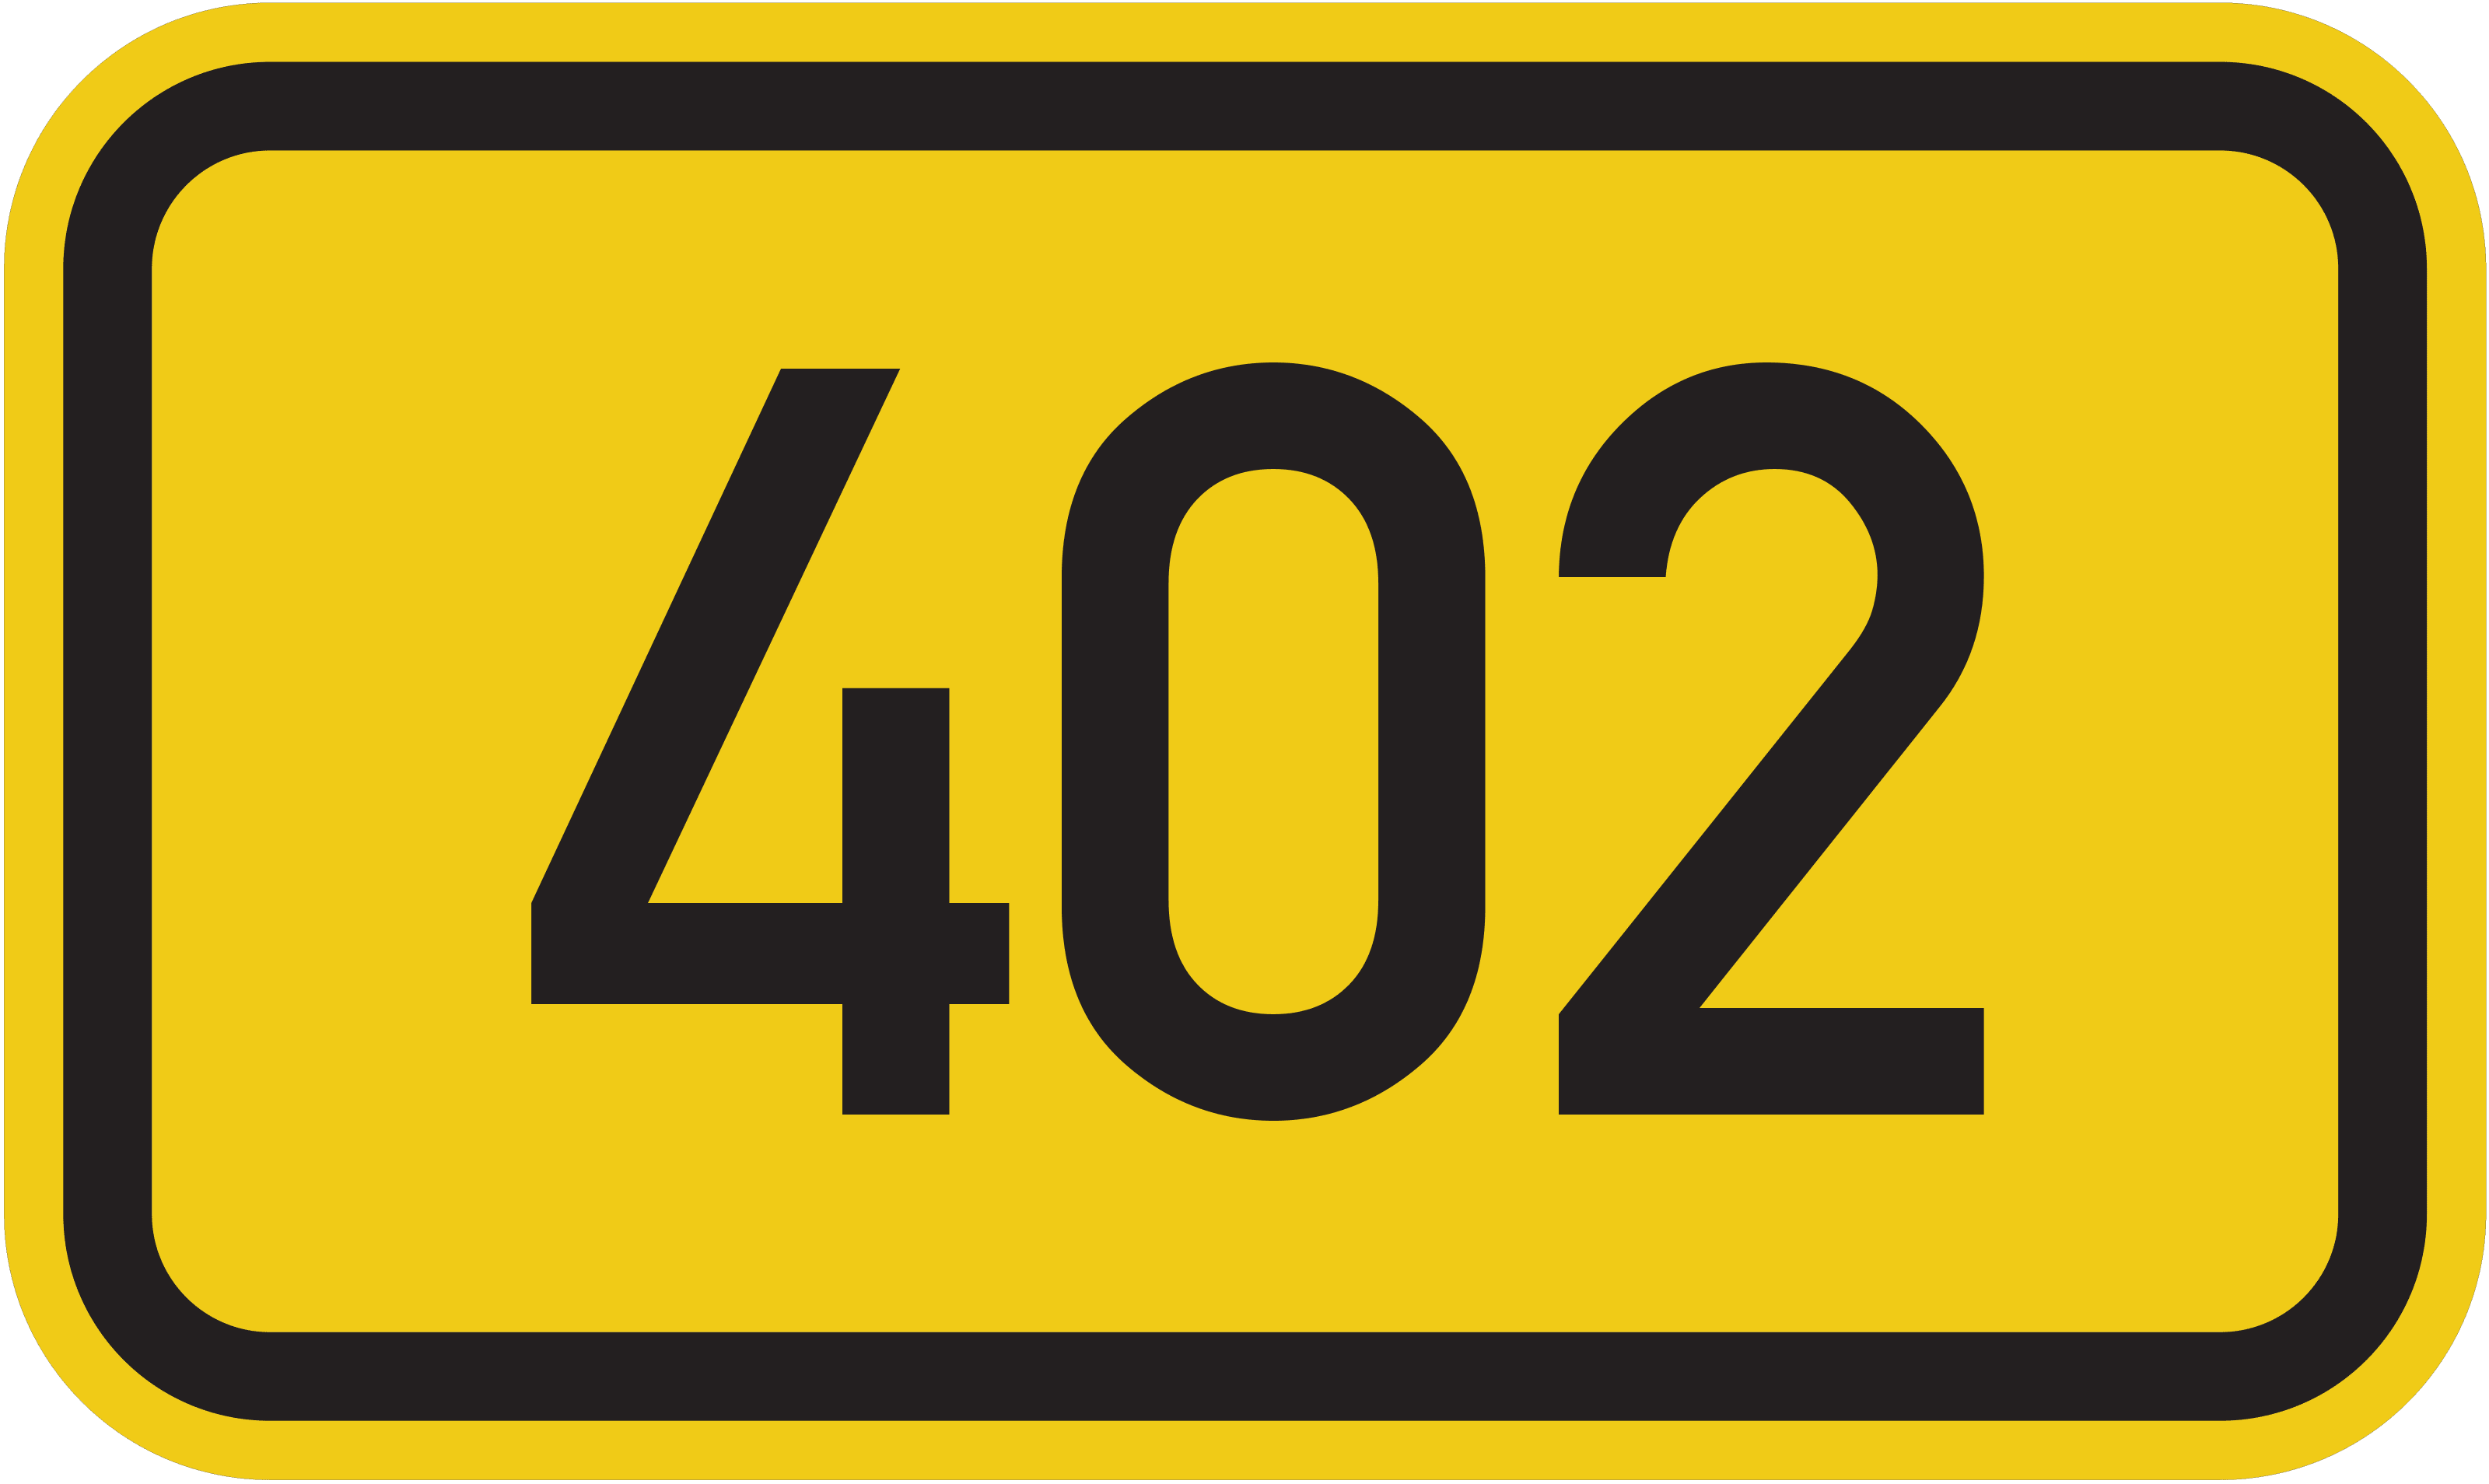 Bundesstraße B 402